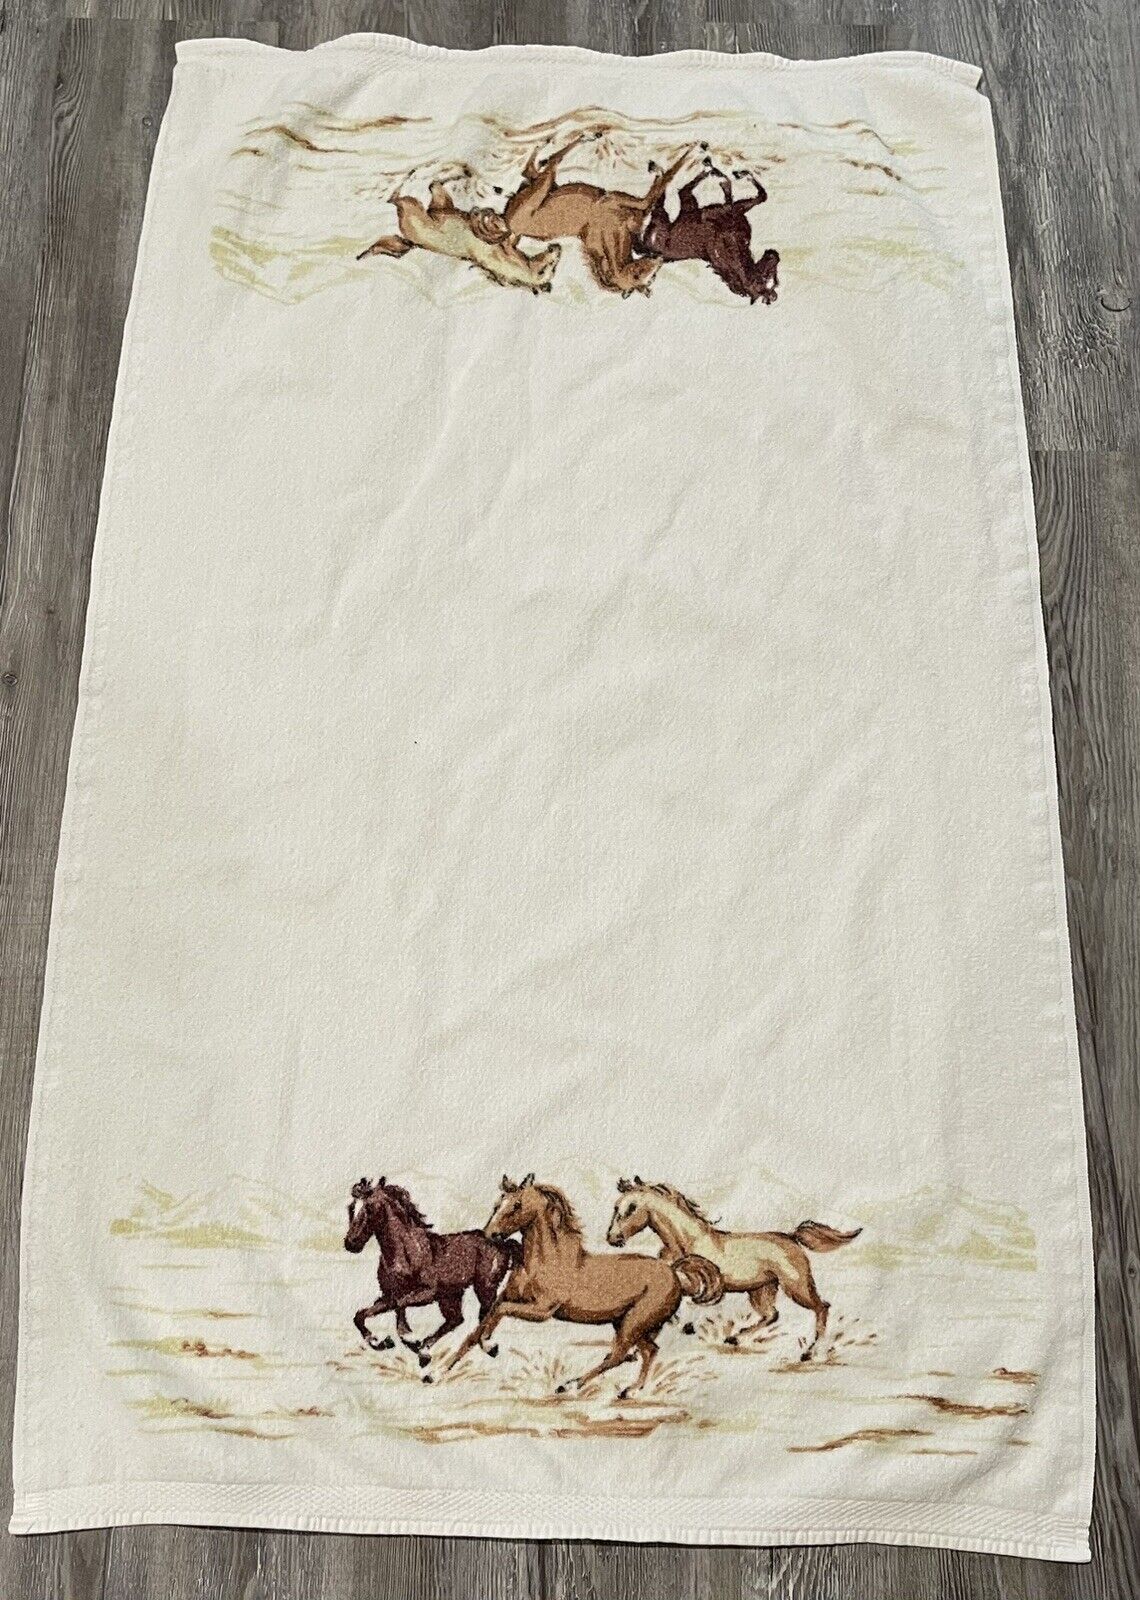 Vintage Bath Towel Western Wild Horse Equestrian Theme 27”x 44” Bathroom Guest